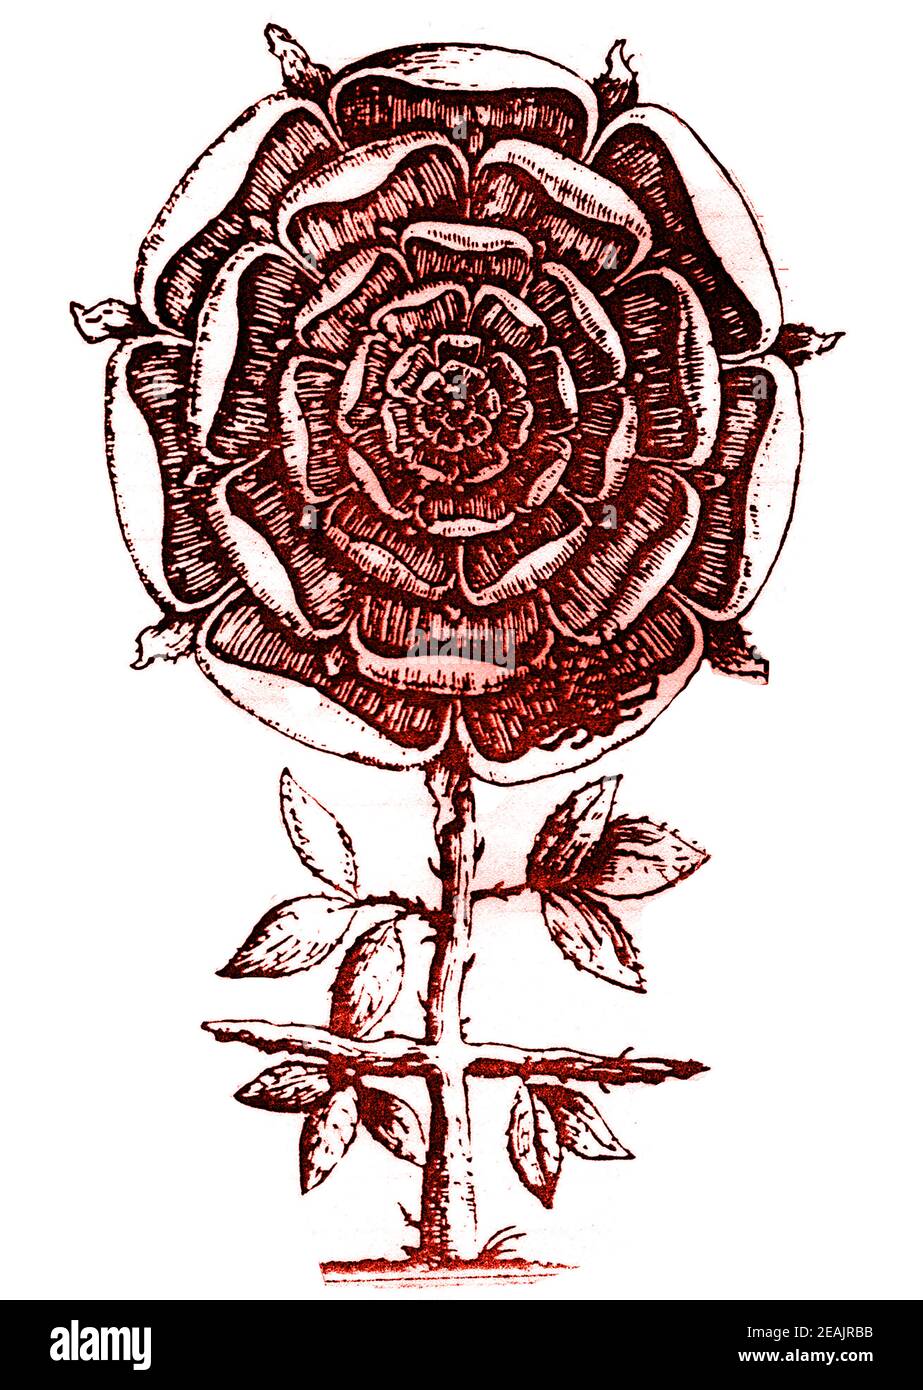 CROIX DE ROSE / CROIX DE ROSE - UNE description symbolique du XVIIe siècle du symbole rosicurien comprenant une rose sur une croix épineuse.- le symbolisme est largement utilisé dans la magie, la mystique, le gnosticisme , l'alchimie, la religion et bien sûr dans l'ordre rosicurien. Banque D'Images